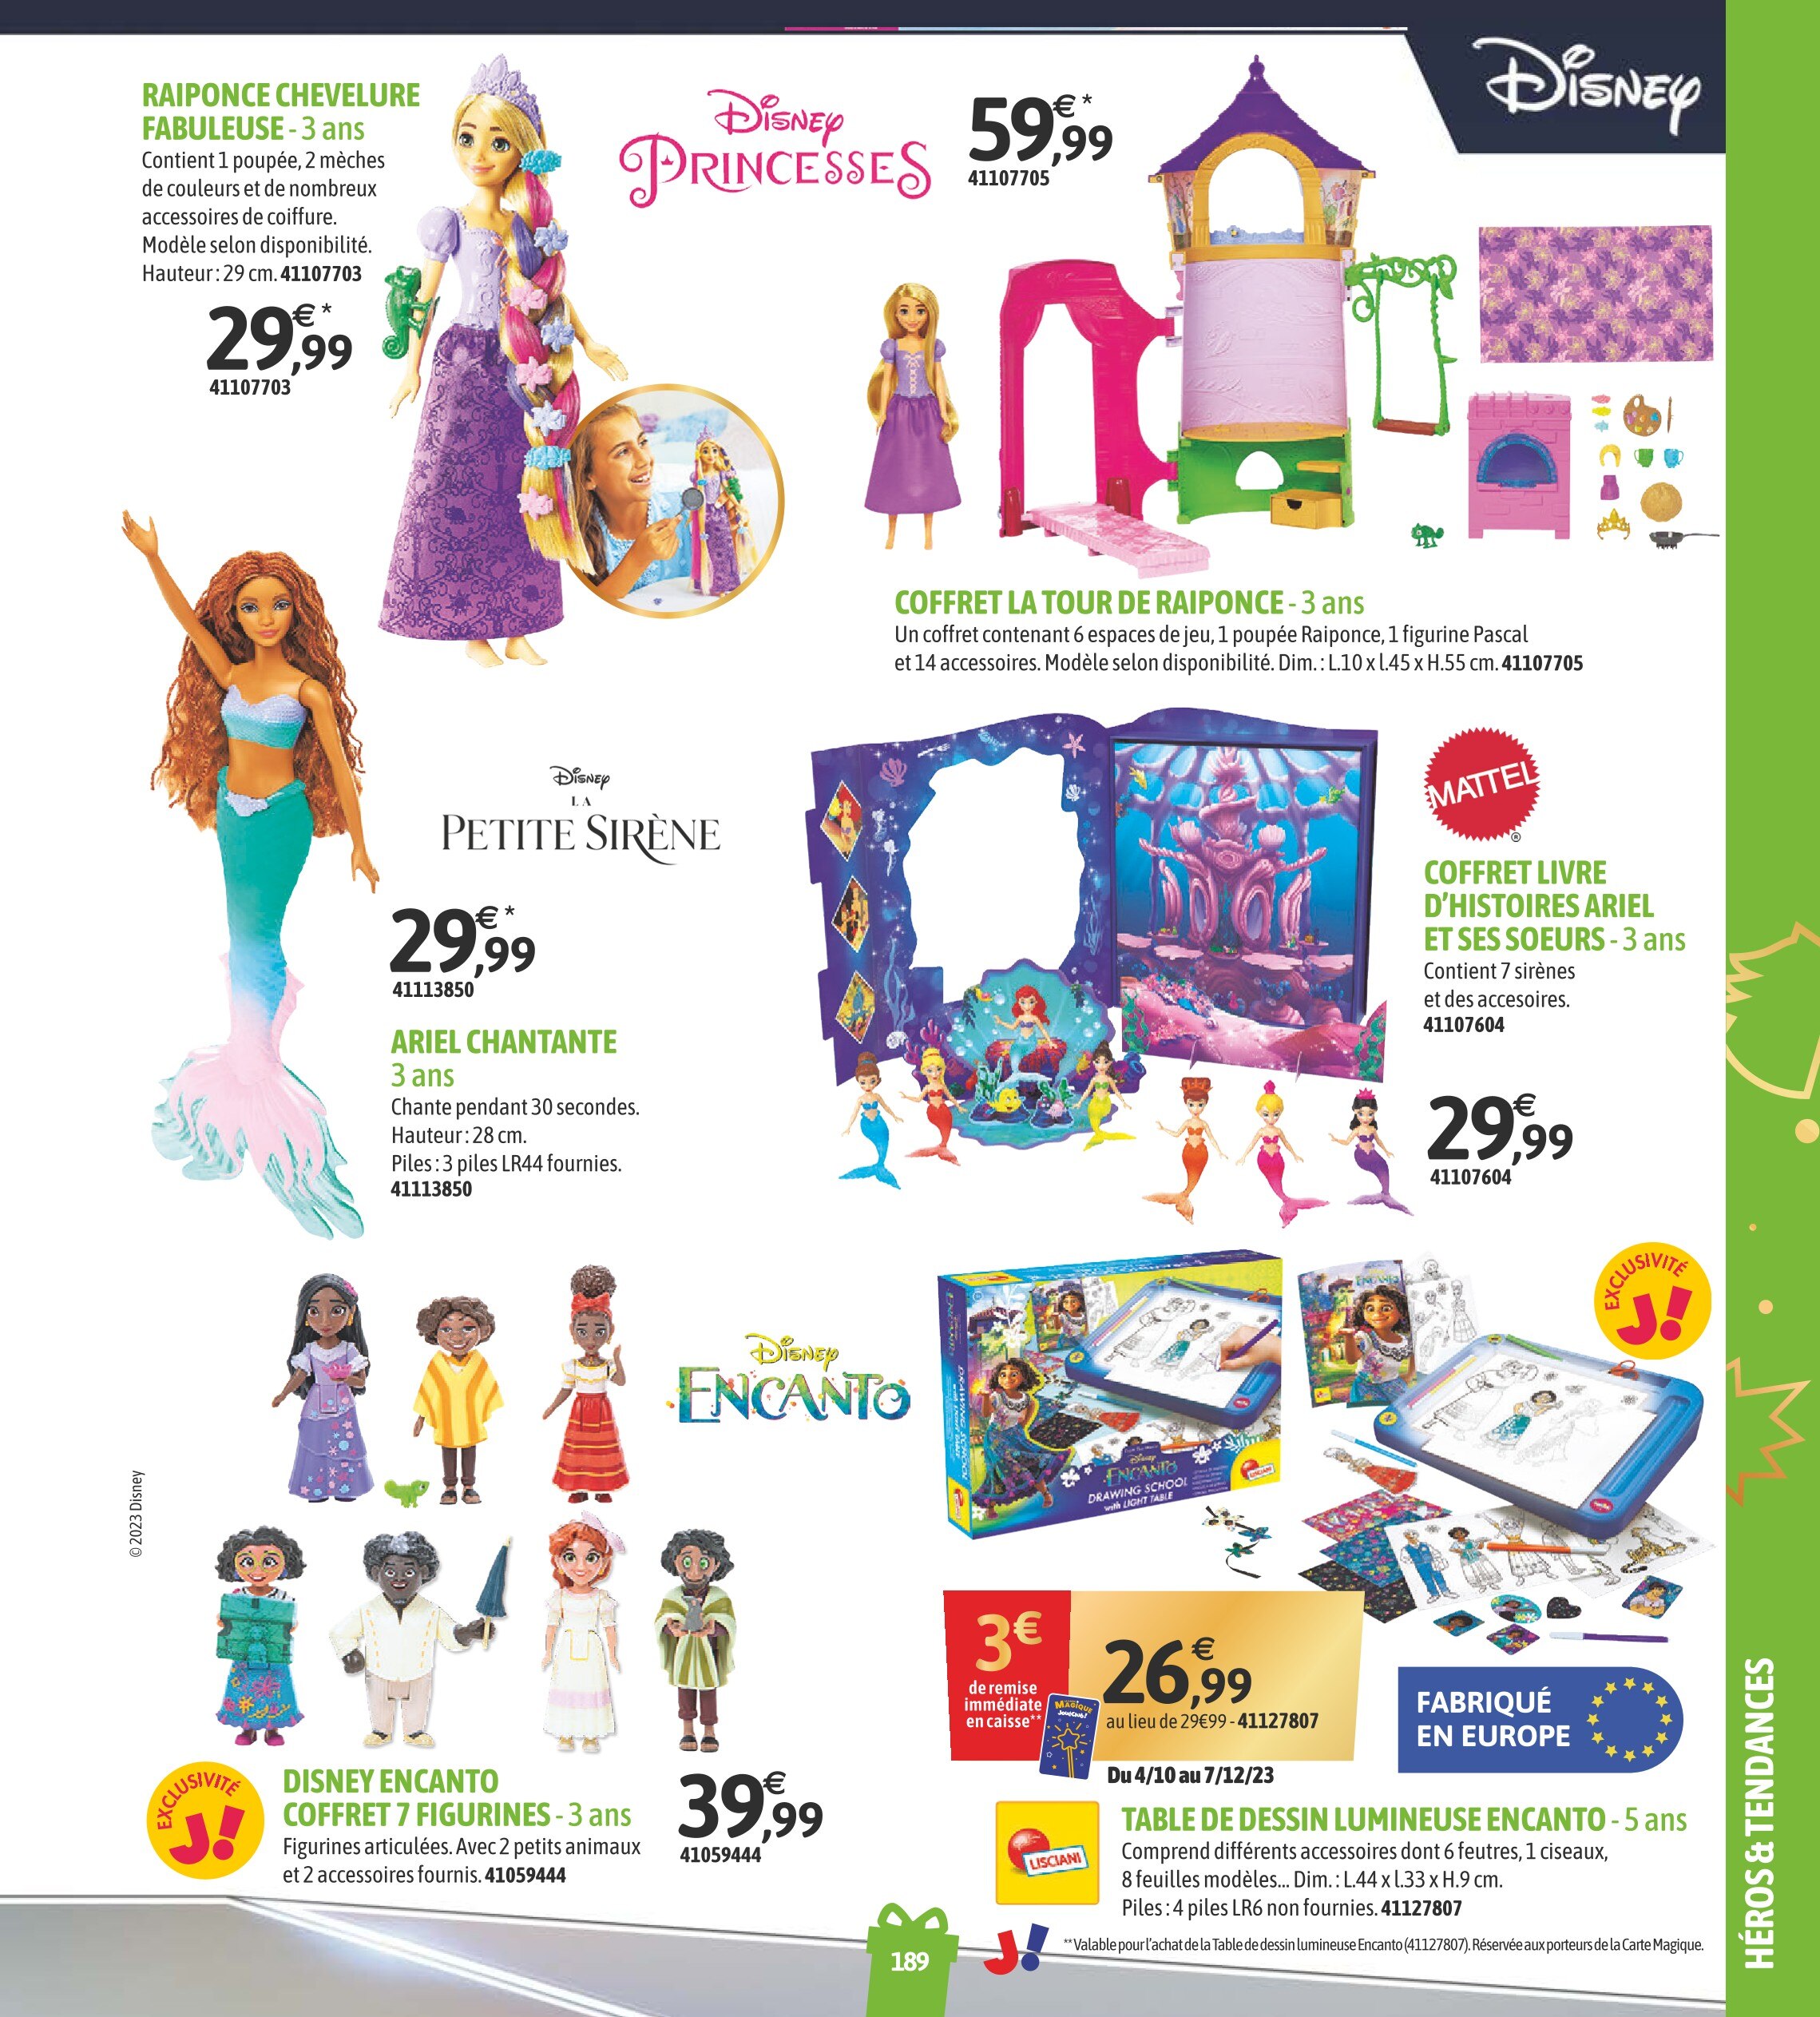 Mattel Calendrier de l'Avent Disney Princess 2023 - acheter chez